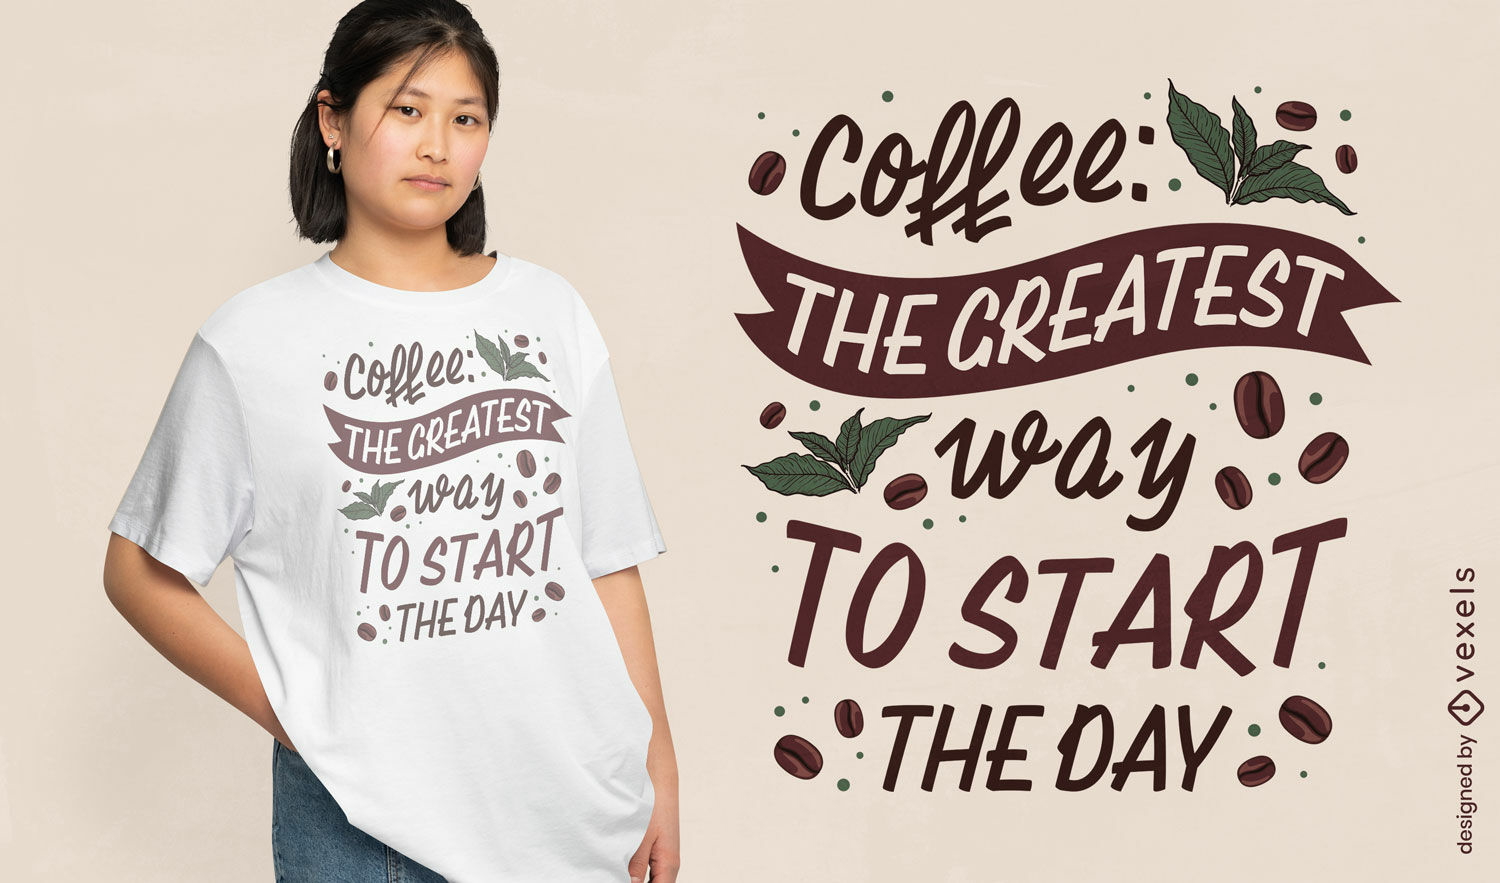 Dise?o de camiseta motivacional de caf? de la ma?ana.